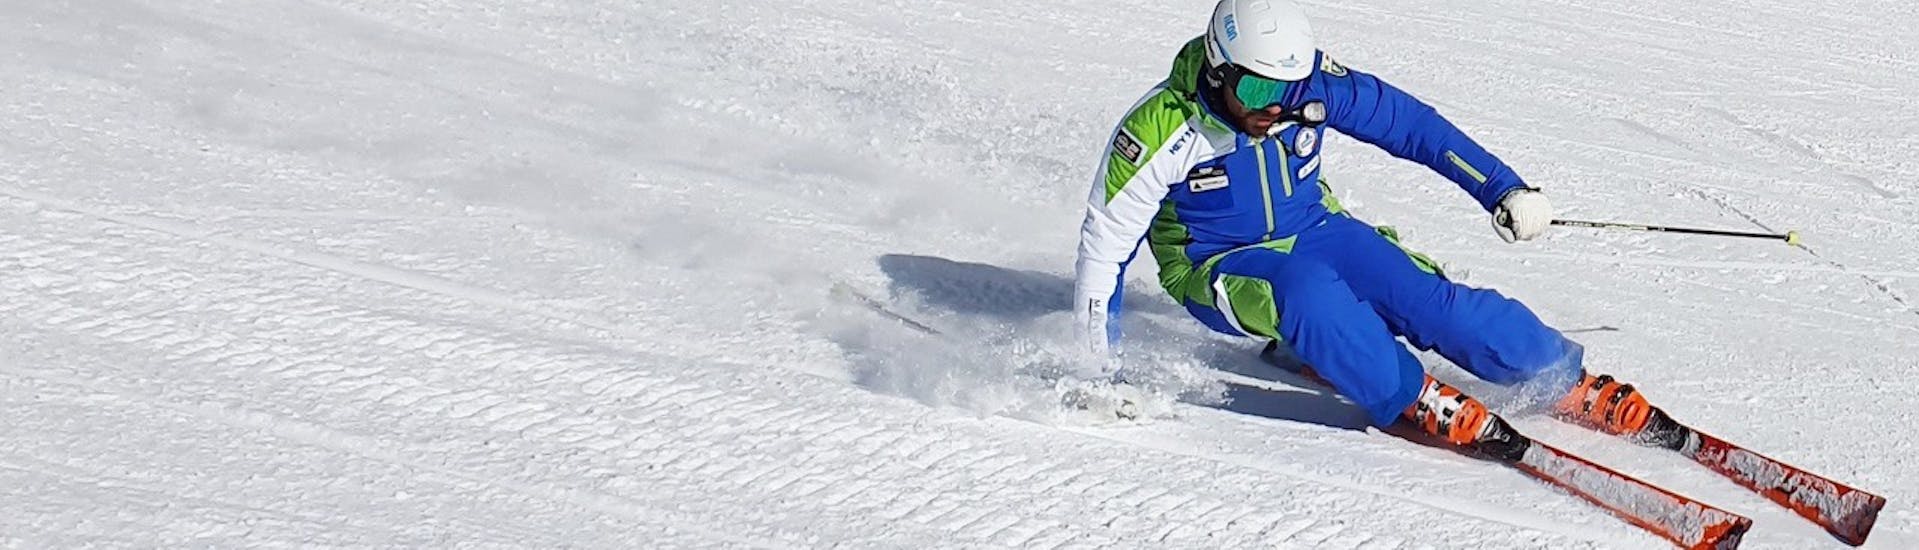 Uno sciatore in pista durante le Lezioni private di sci per adulti per tutti i livelli con Scuola Sci Freeski Roccaraso.